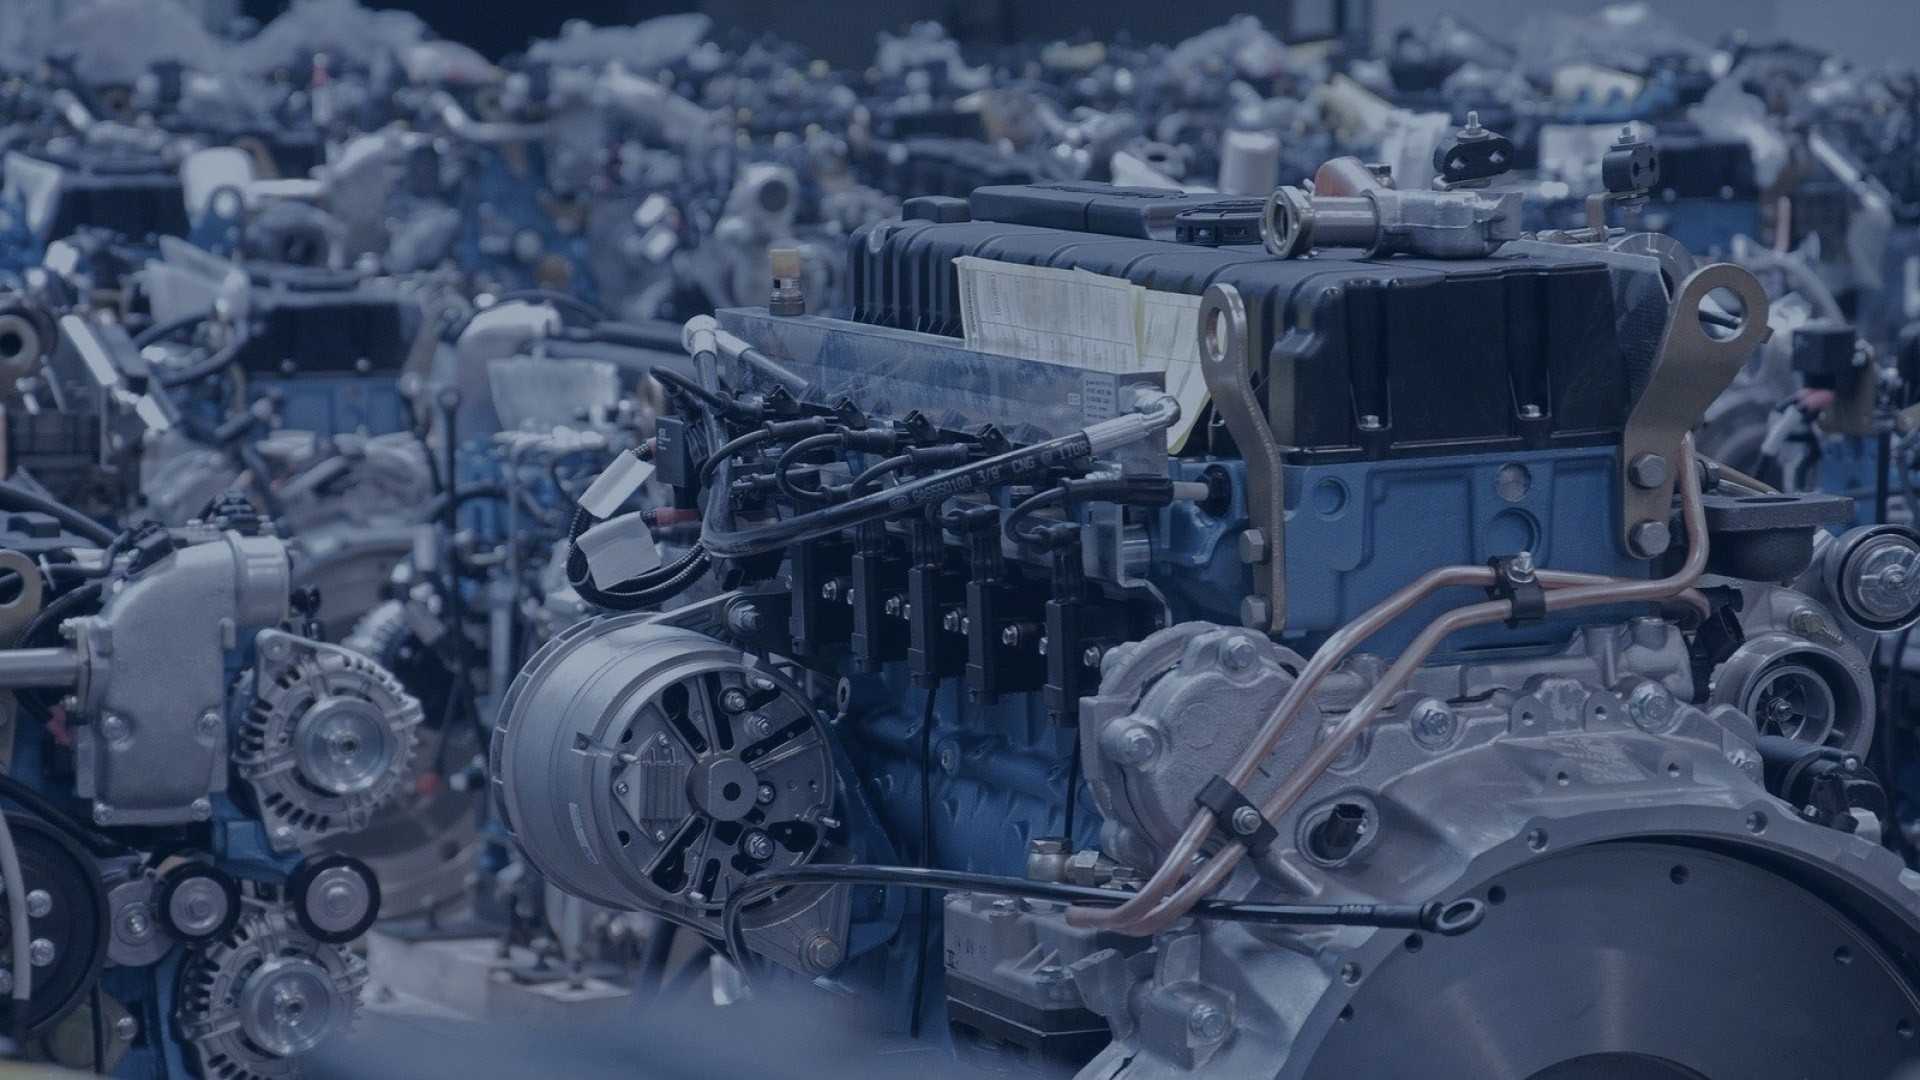 Двигатель ямз-650 (651, 652, 653) | характеристики, масло